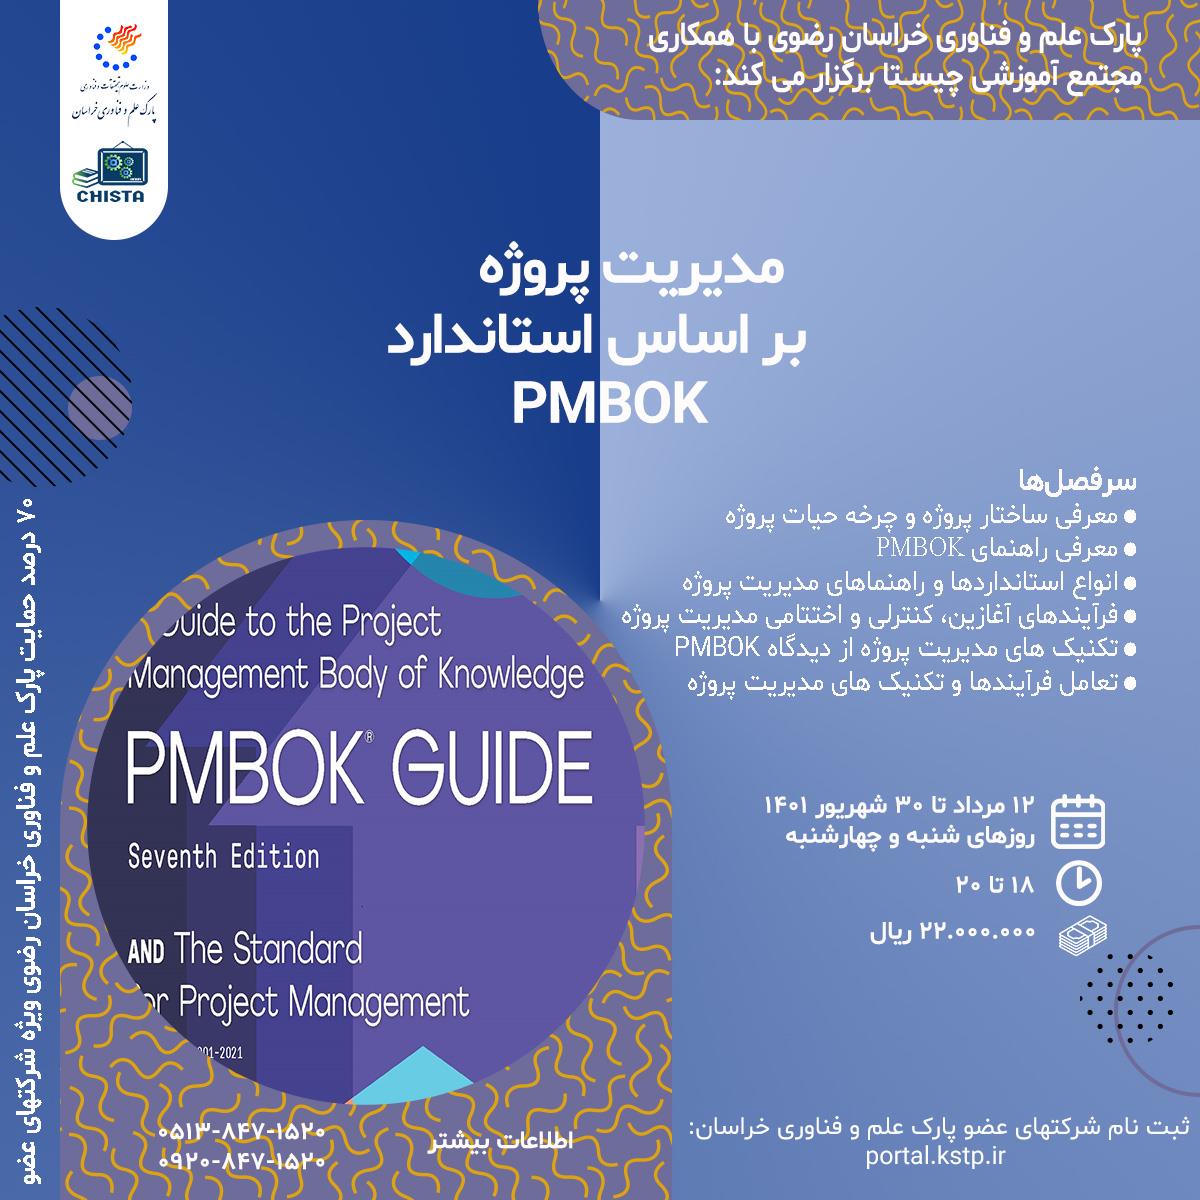 مدیریت پروژه بر اساس استاندارد PMBOK